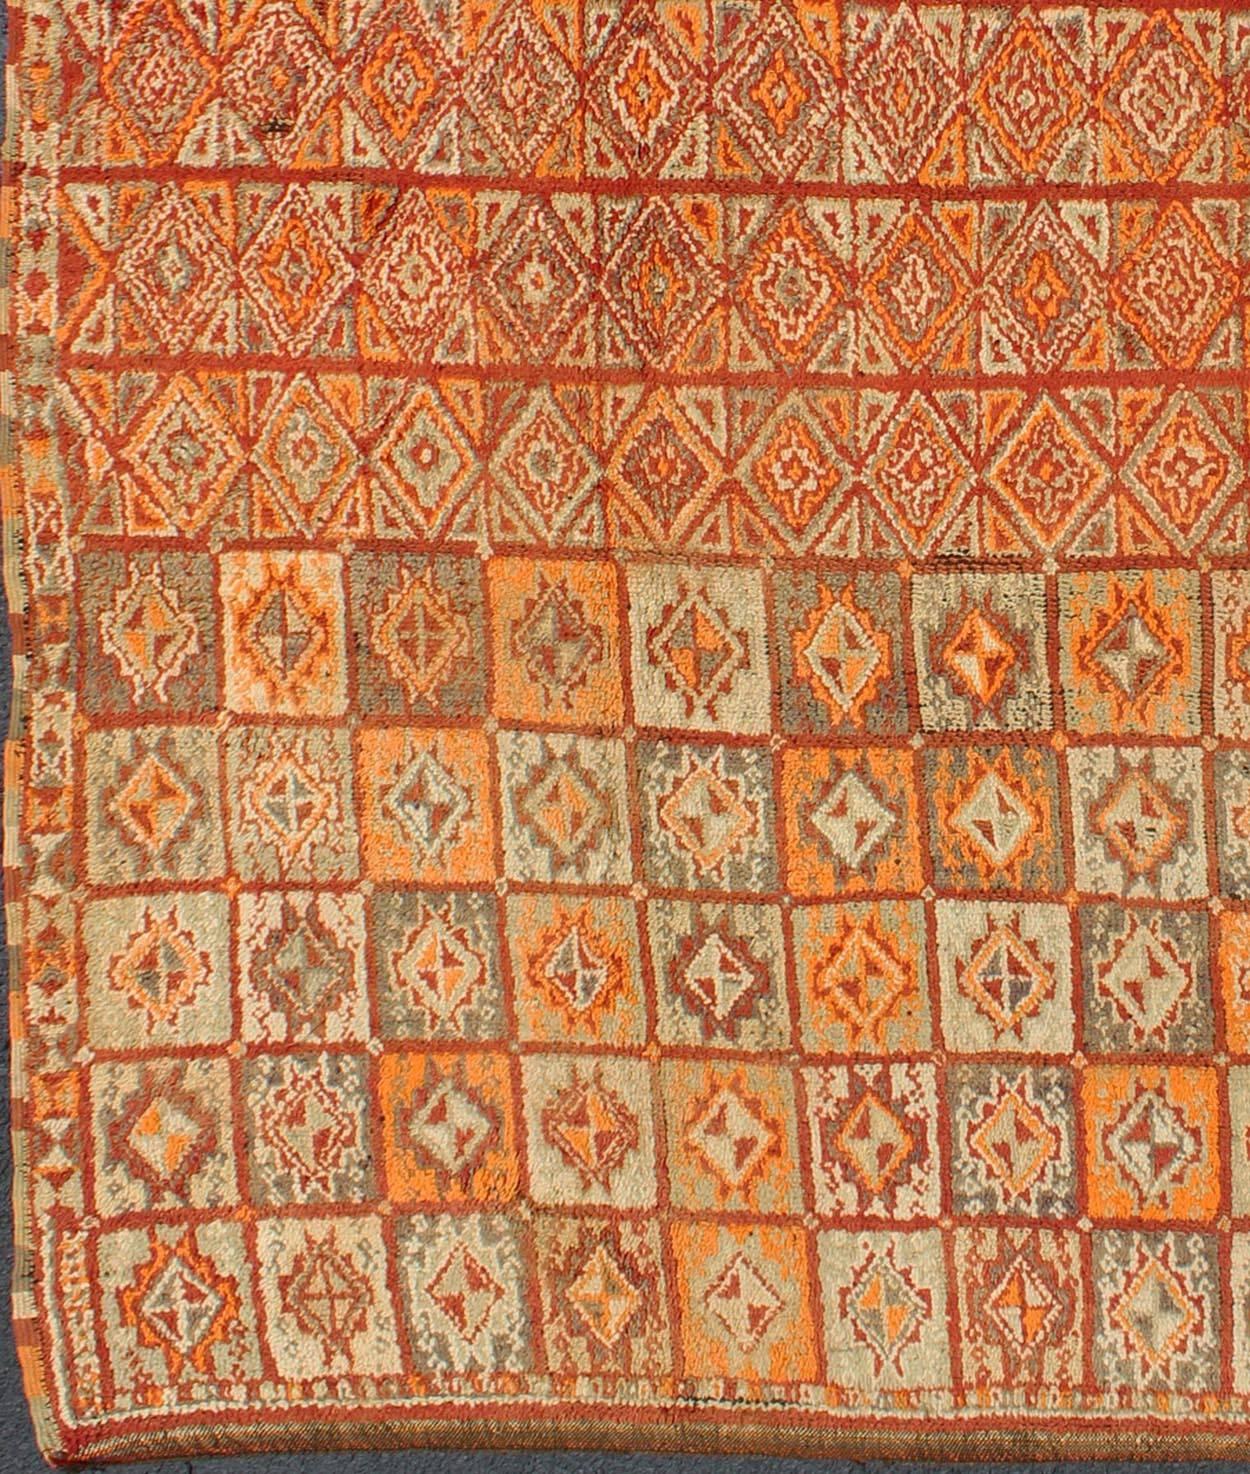 Marokkanischer Vintage-Teppich in Herbstfarben, Rot, Kürbis, Orange und Hellgrün
Dieser farbenfrohe marokkanische Teppich zeichnet sich durch ein Gitter aus geometrischen Mustern und eine Vielzahl von herbstlichen Farben wie Rot, Kürbis, Orange und